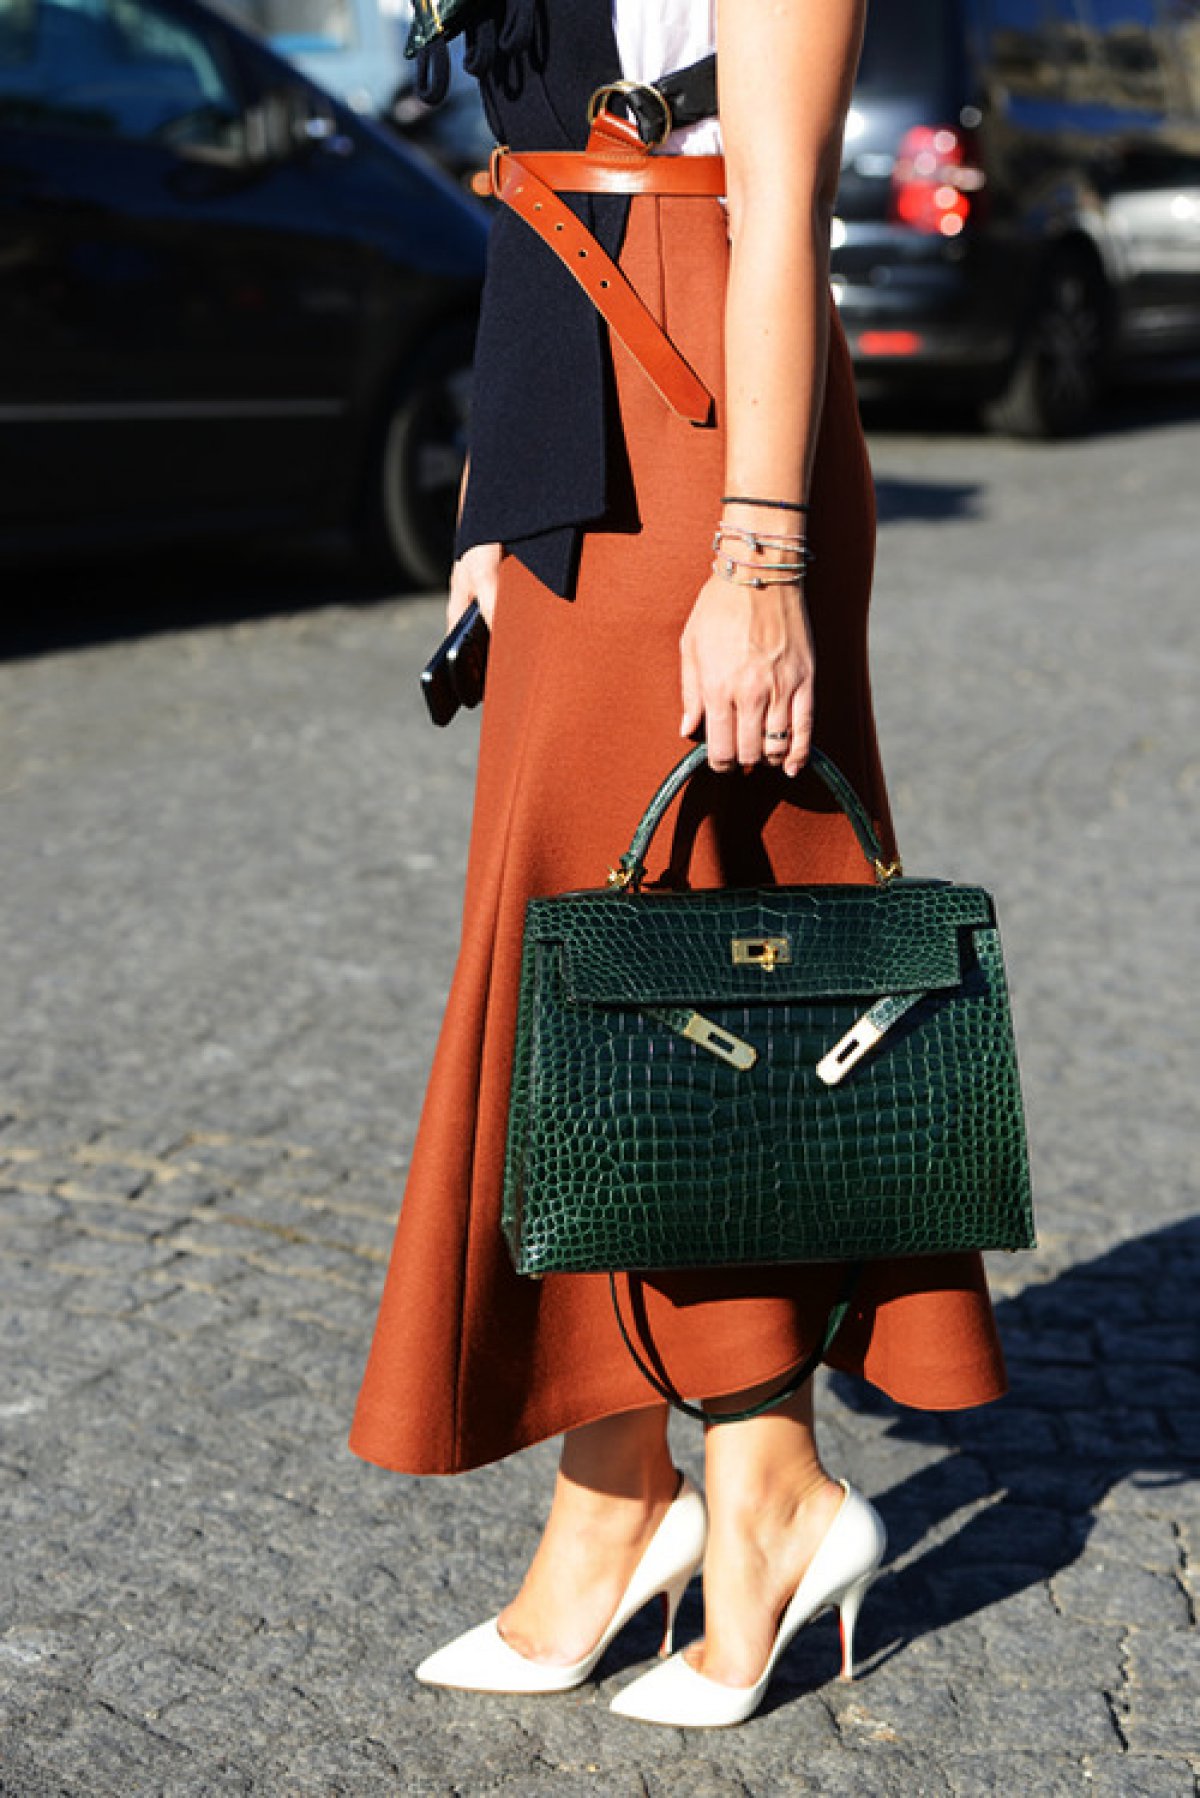 Grace Kelly Inspired This Hermes Handbag 